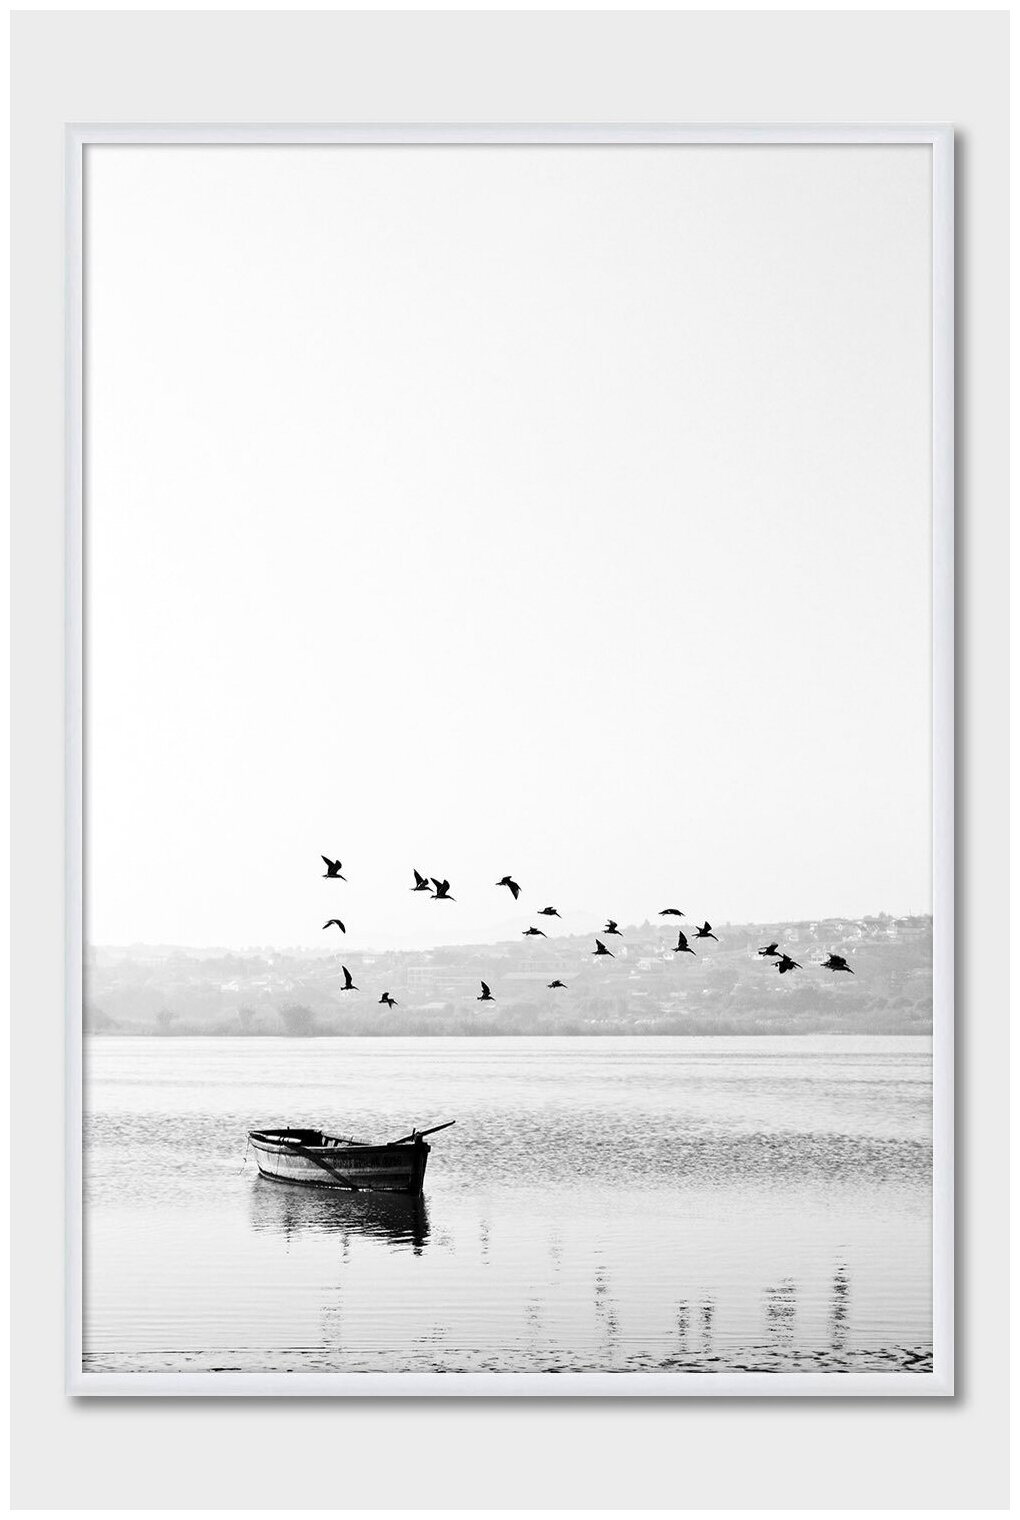 Черно-белый постер на стену для интерьера Postermarkt Лодка и птицы, постер в белой рамке 30х40 см, постеры картины для интерьера в белой рамке